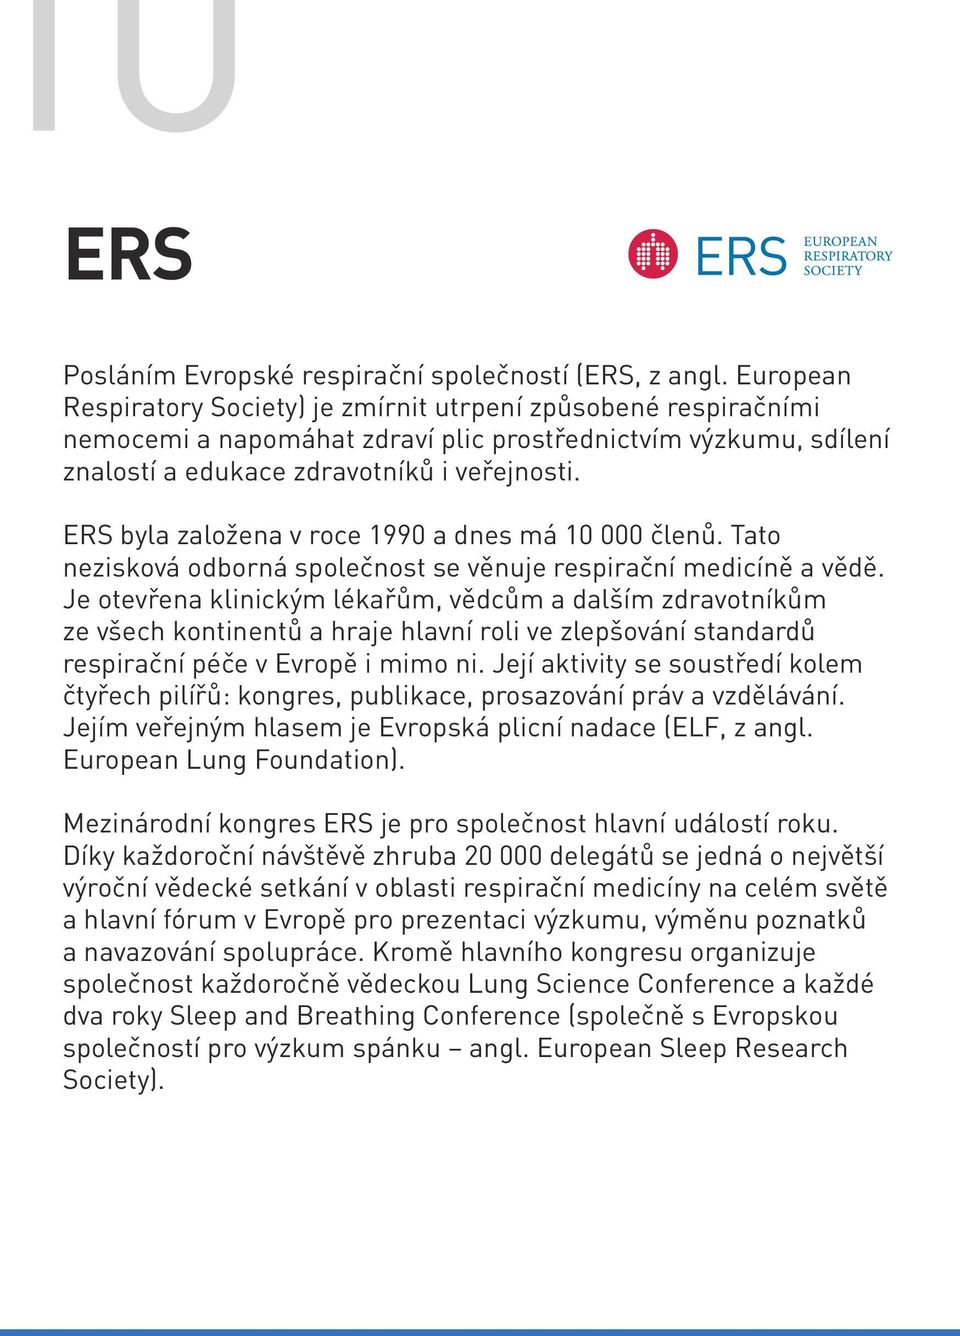 ERS byla založena v roce 1990 a dnes má 10 000 členů. Tato nezisková odborná společnost se věnuje respirační medicíně a vědě.